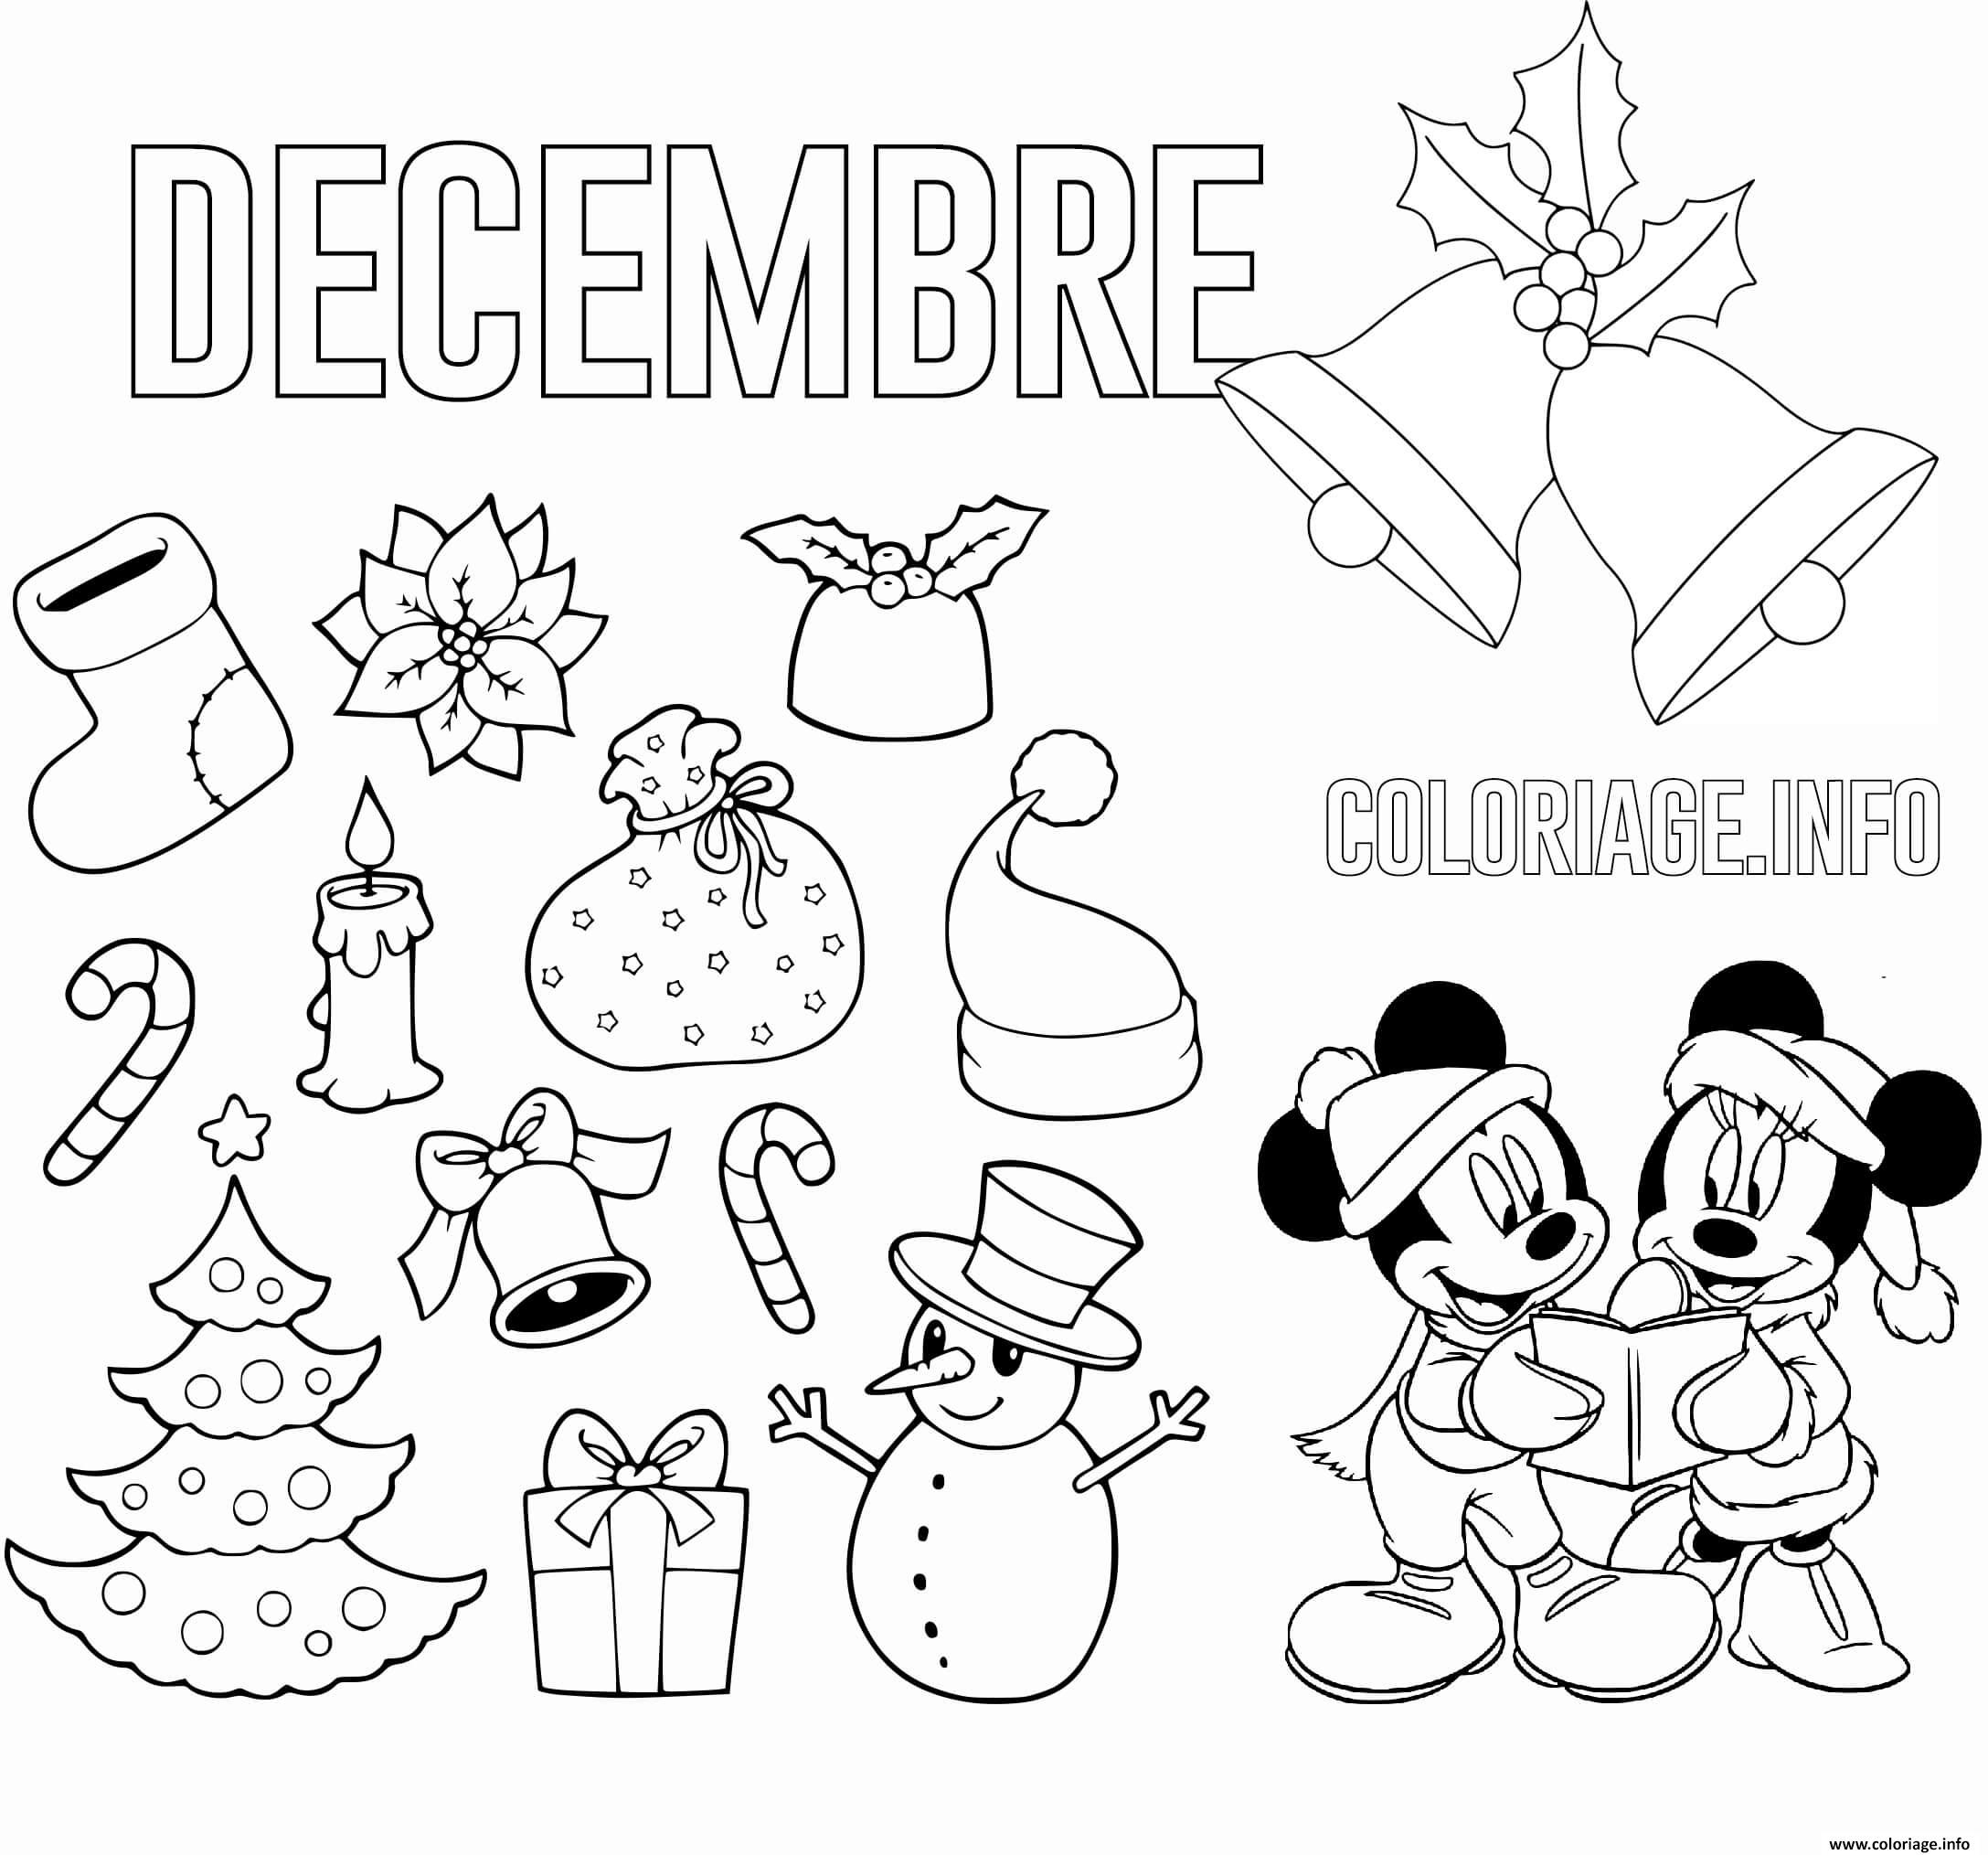 Coloriage Decembre Theme De Noel Maternelle Dessin Noel À Imprimer destiné Dessin De Noel A Dessiner 